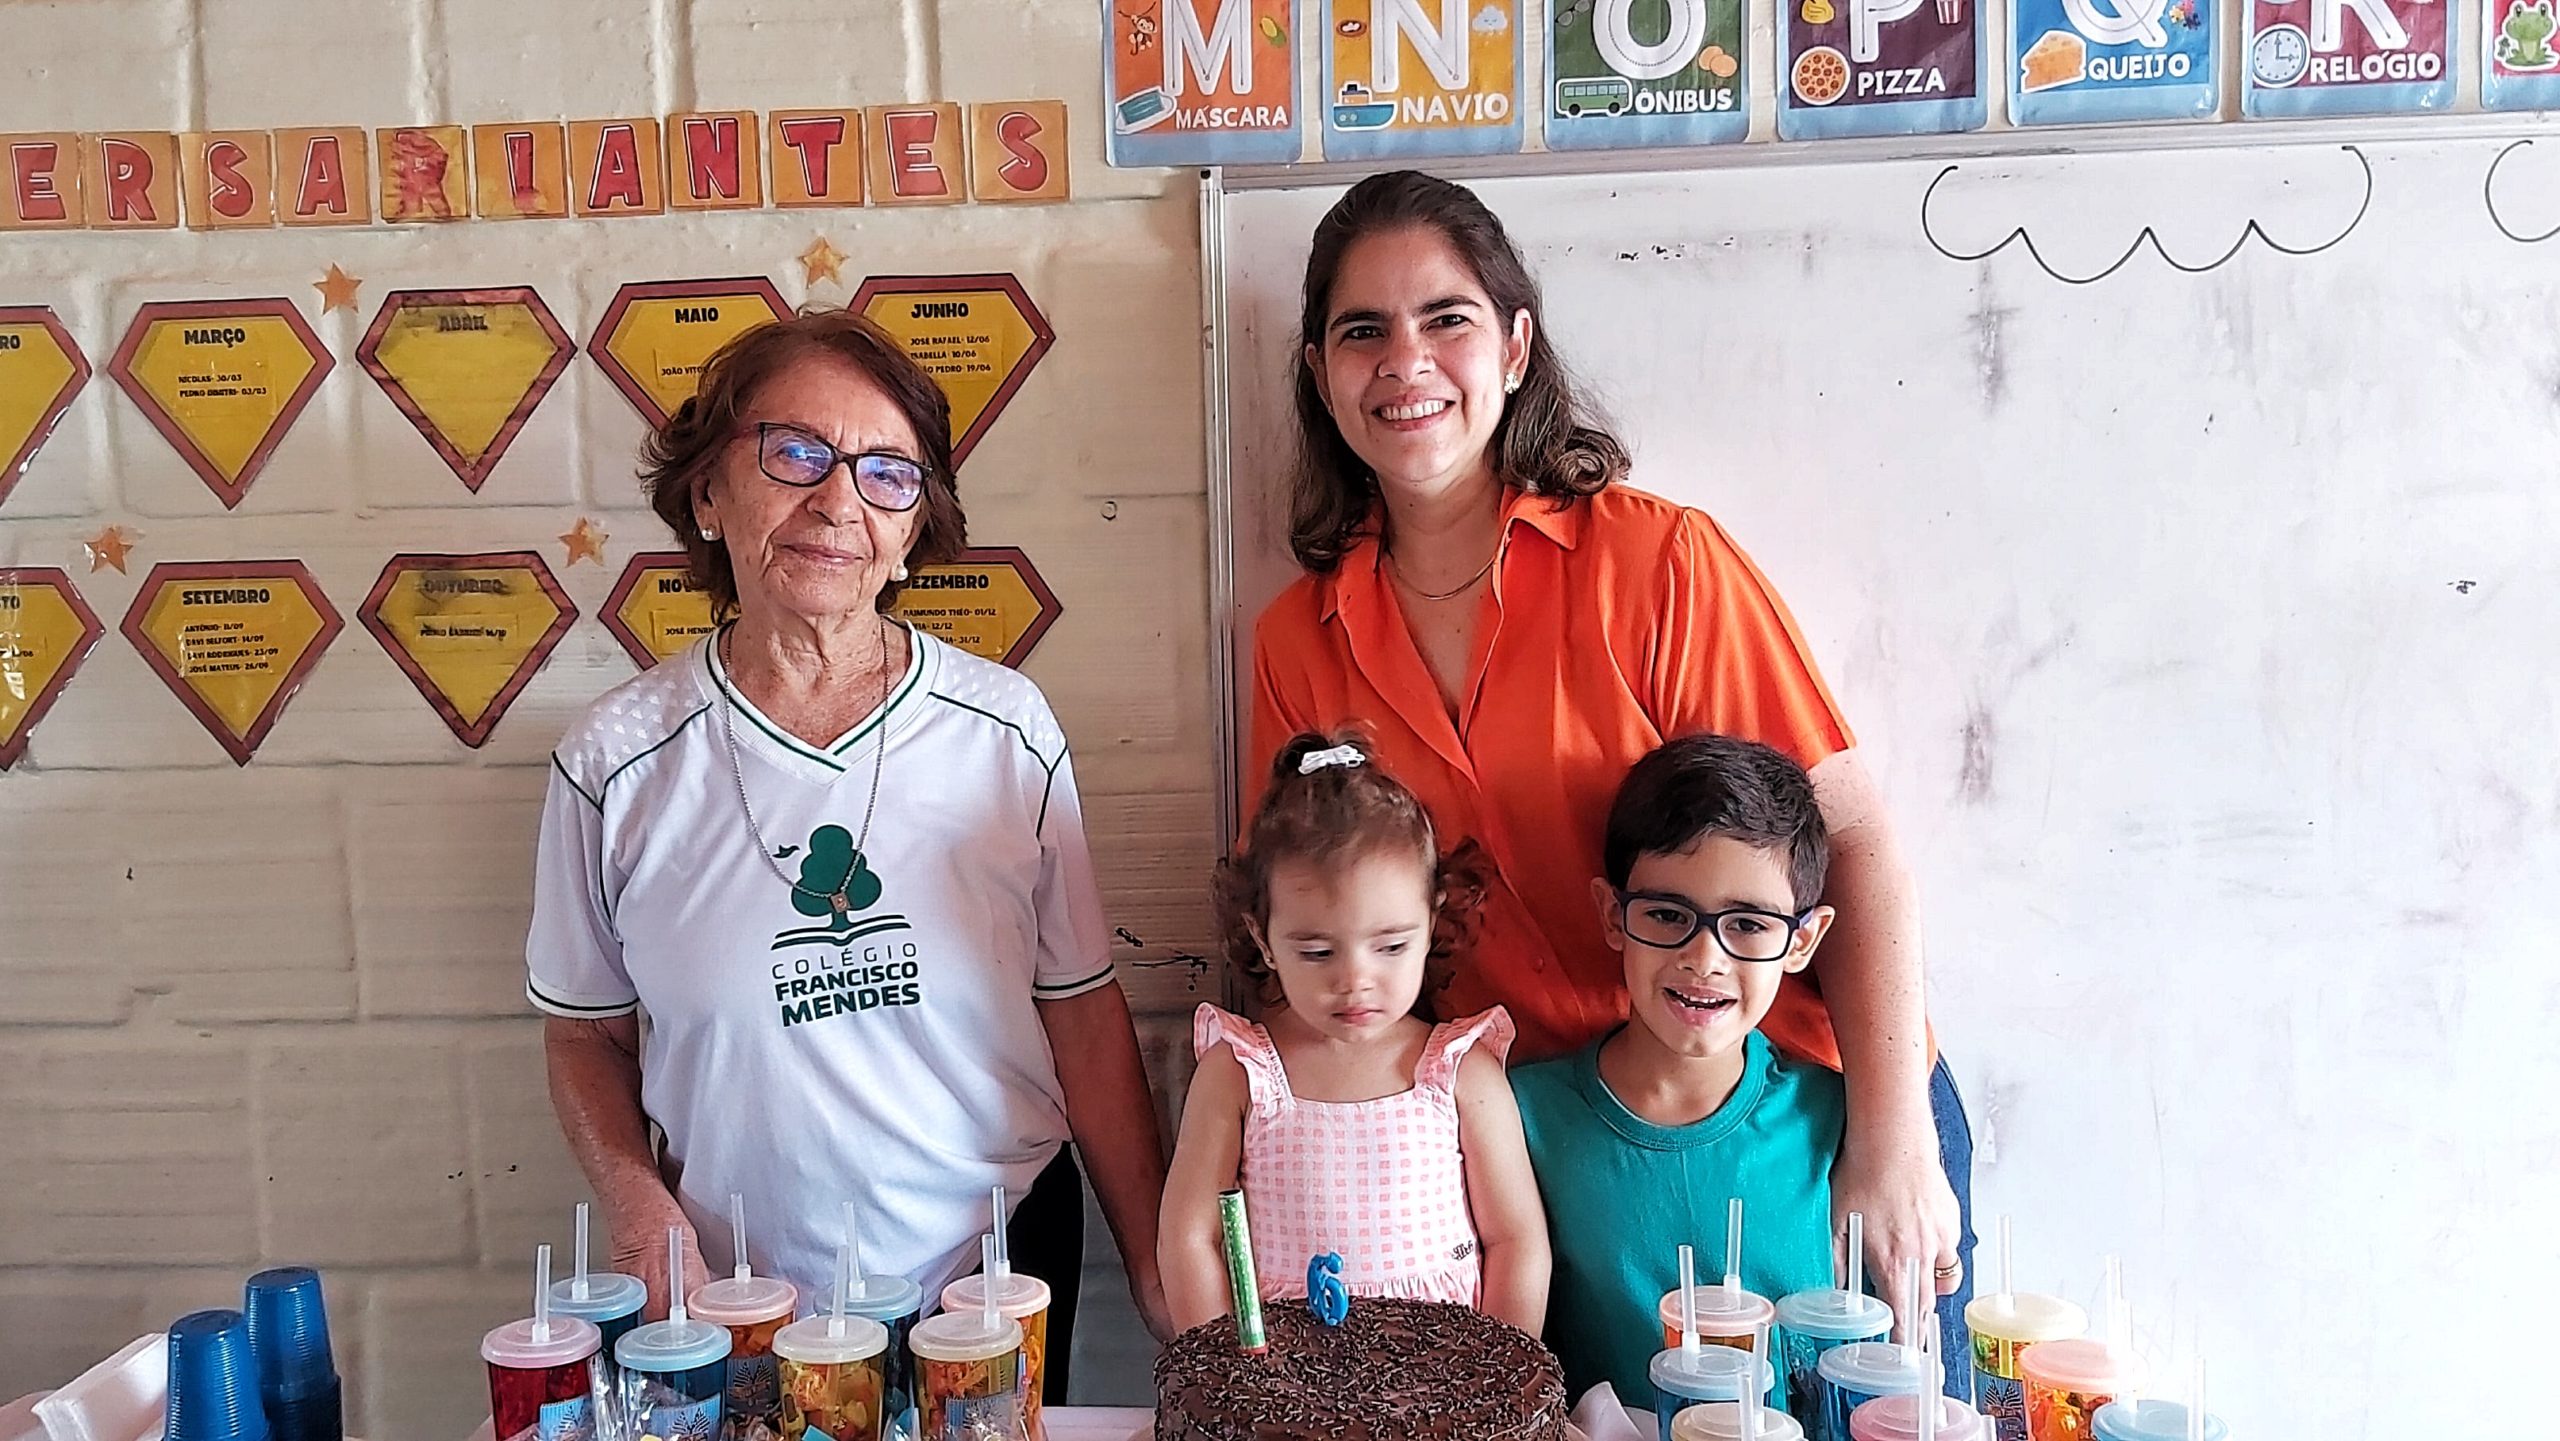 Família homenageia Colégio Chico Mendes após formação de filhos